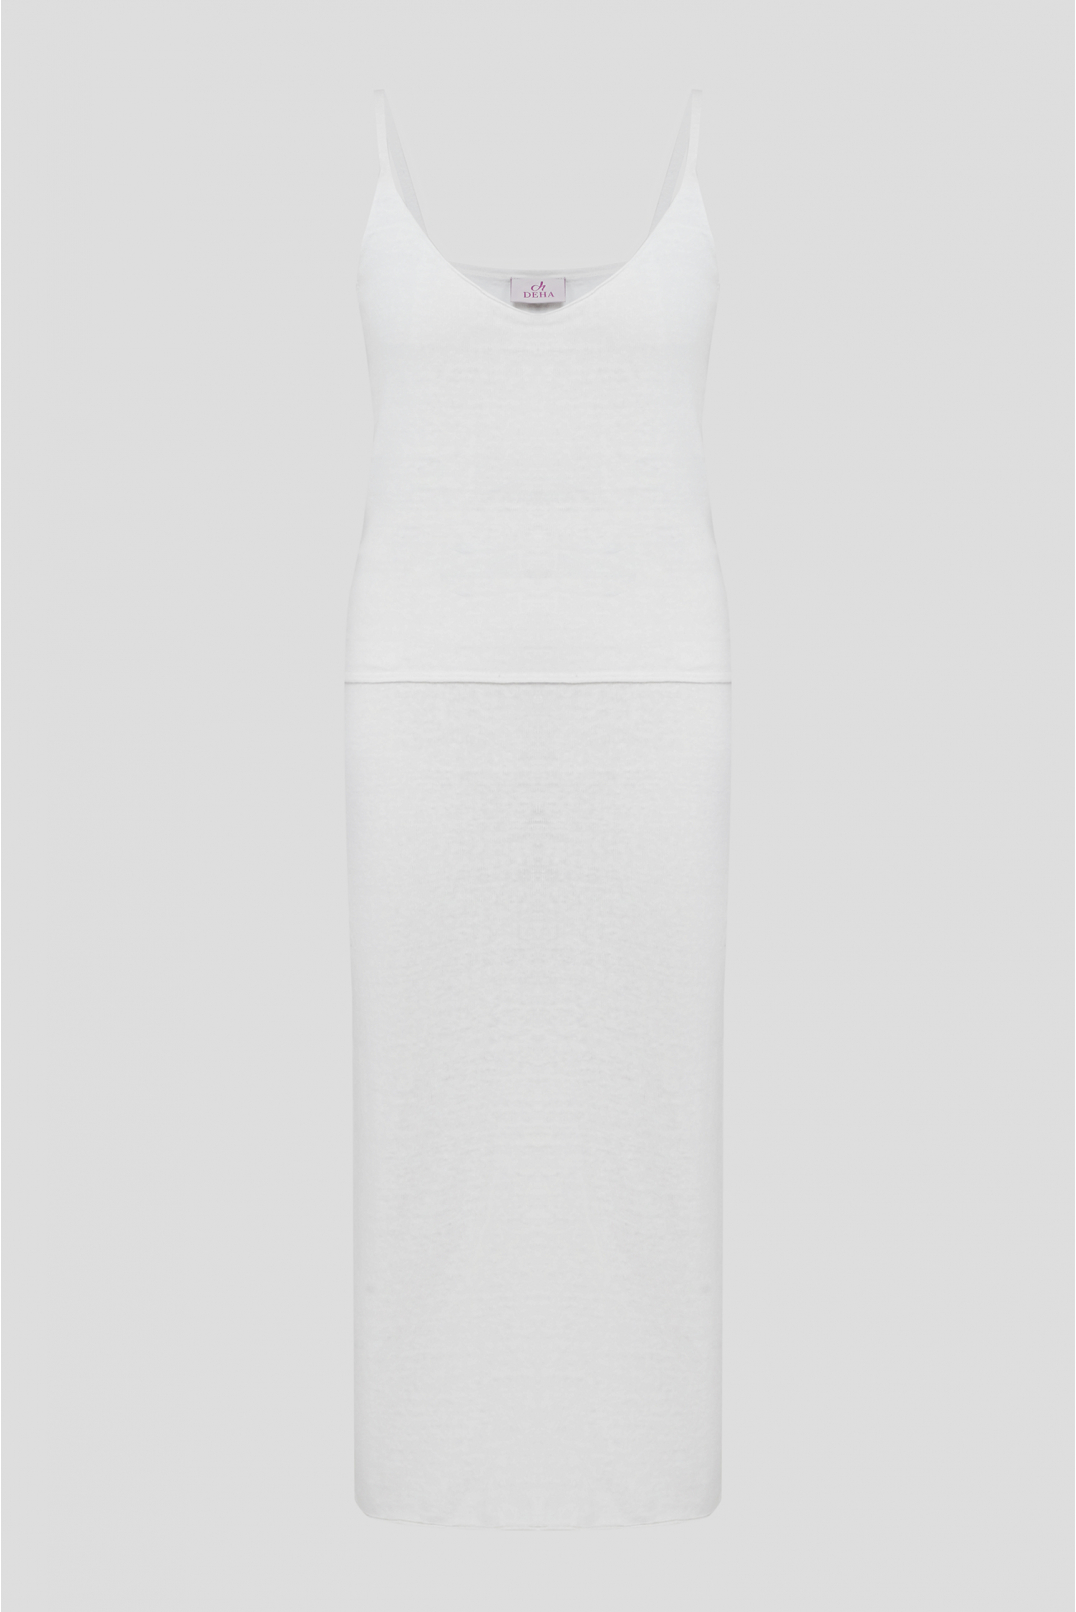 Жіночий білий лляний костюм (топ, спідниця) - 1